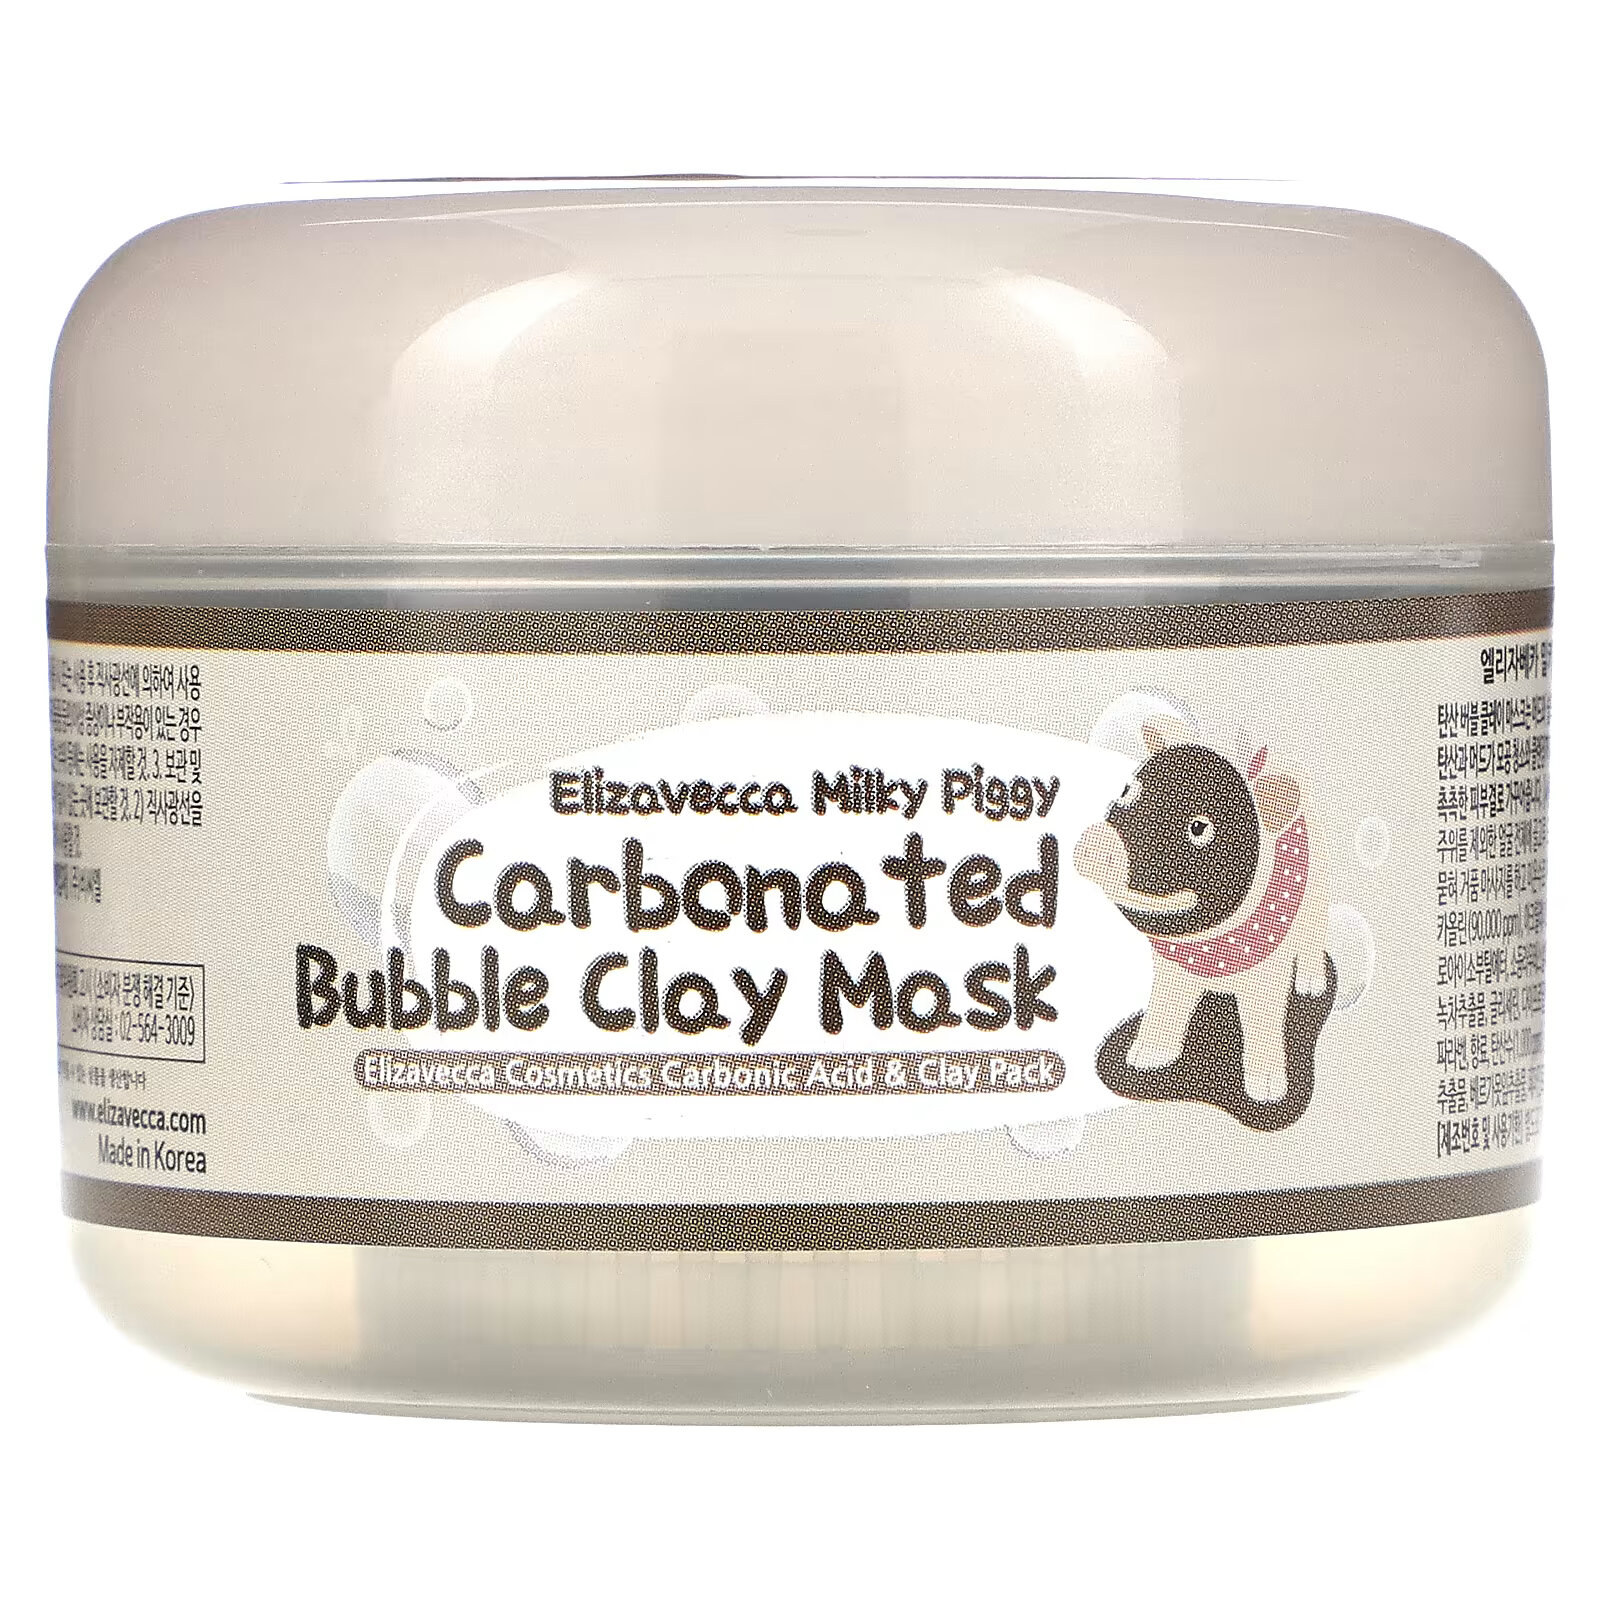 Elizavecca, Milky Piggy карбонизированная глиняно-пузырьковая маска, 100 г elizavecca milky piggy пузырьковая глиняная маска 100 г 100 мл